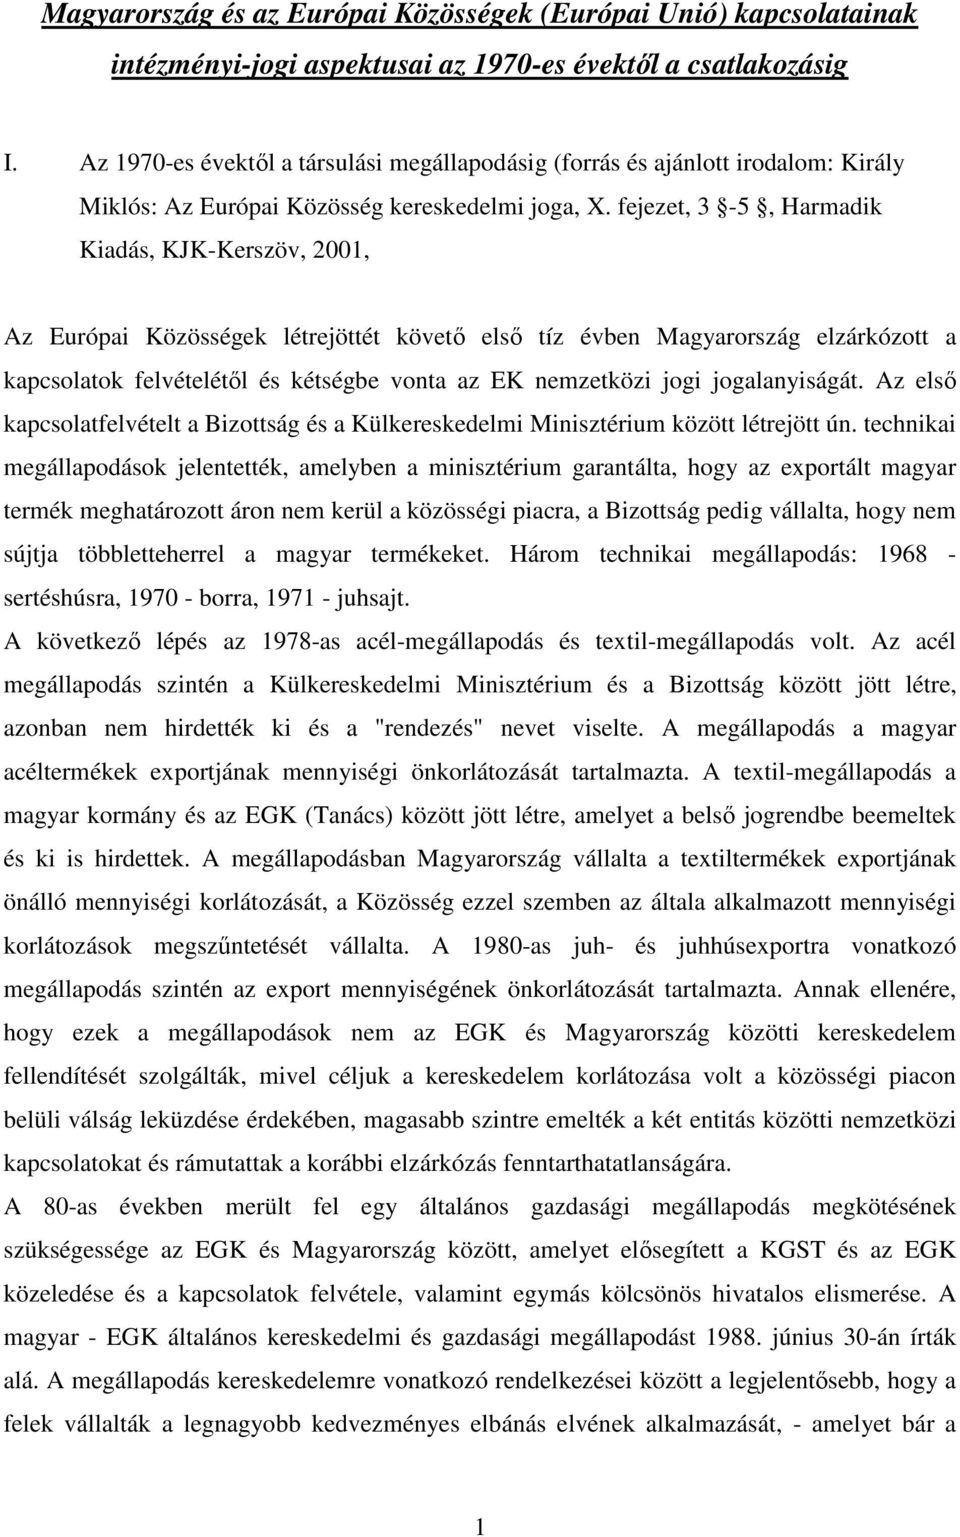 fejezet, 3-5, Harmadik Kiadás, KJK-Kerszöv, 2001, Az Európai Közösségek létrejöttét követő első tíz évben Magyarország elzárkózott a kapcsolatok felvételétől és kétségbe vonta az EK nemzetközi jogi